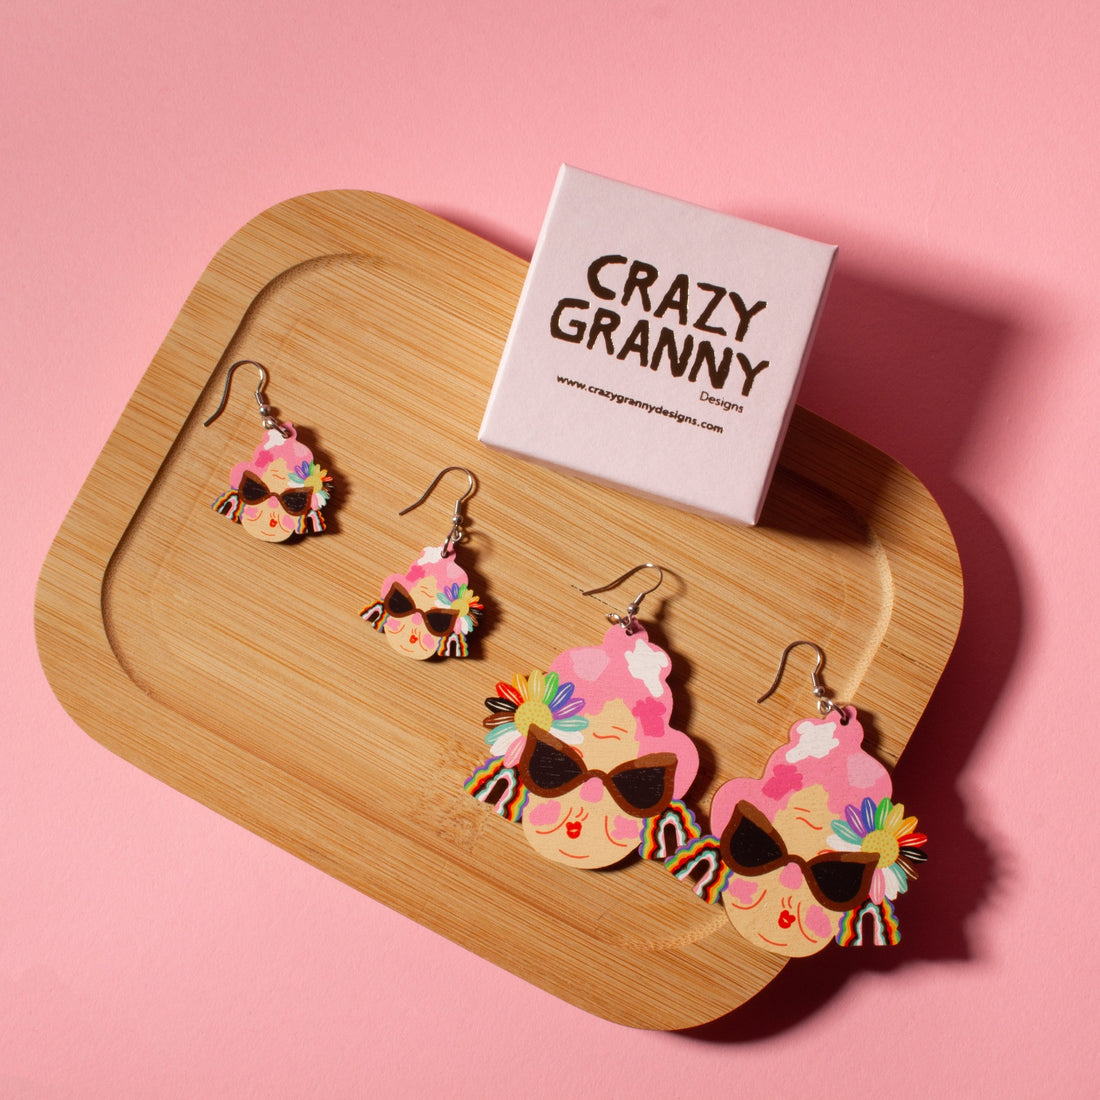 Crazy Granny Designs avaa myymälän Kupun tiloihin